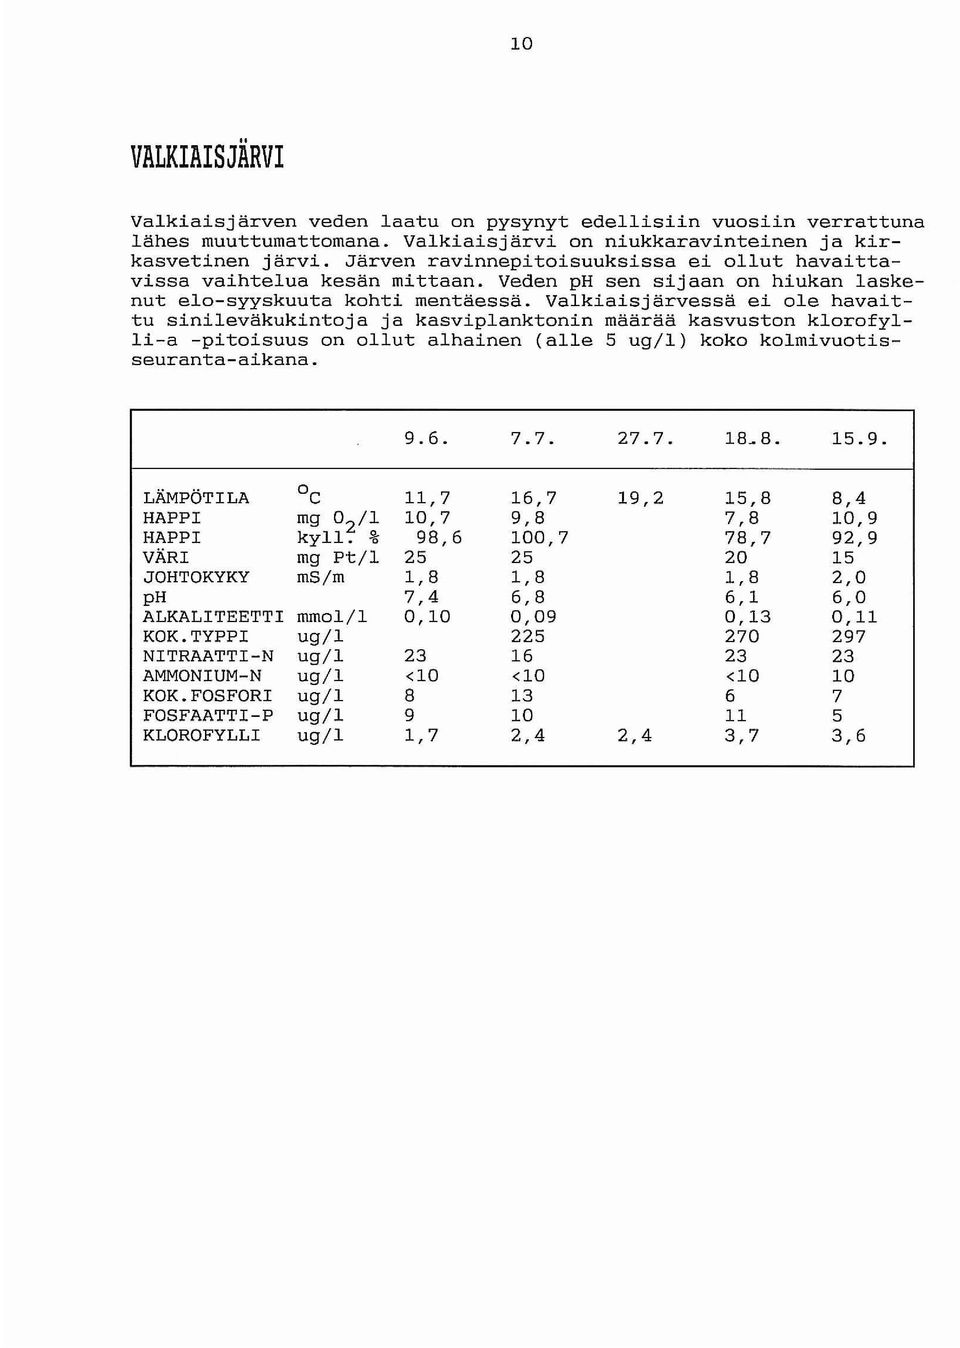 Valkiaisjärvessä ei ole havaittu sinileväkukintoja ja kasviplanktonin määrää kasvuston klorofylli-a -pitoisuus on ollut alhainen (alle 5 ug/l) koko kolmivuotisseuranta-aikana. 9.6. 7.7. 27.7. 18_ 8.